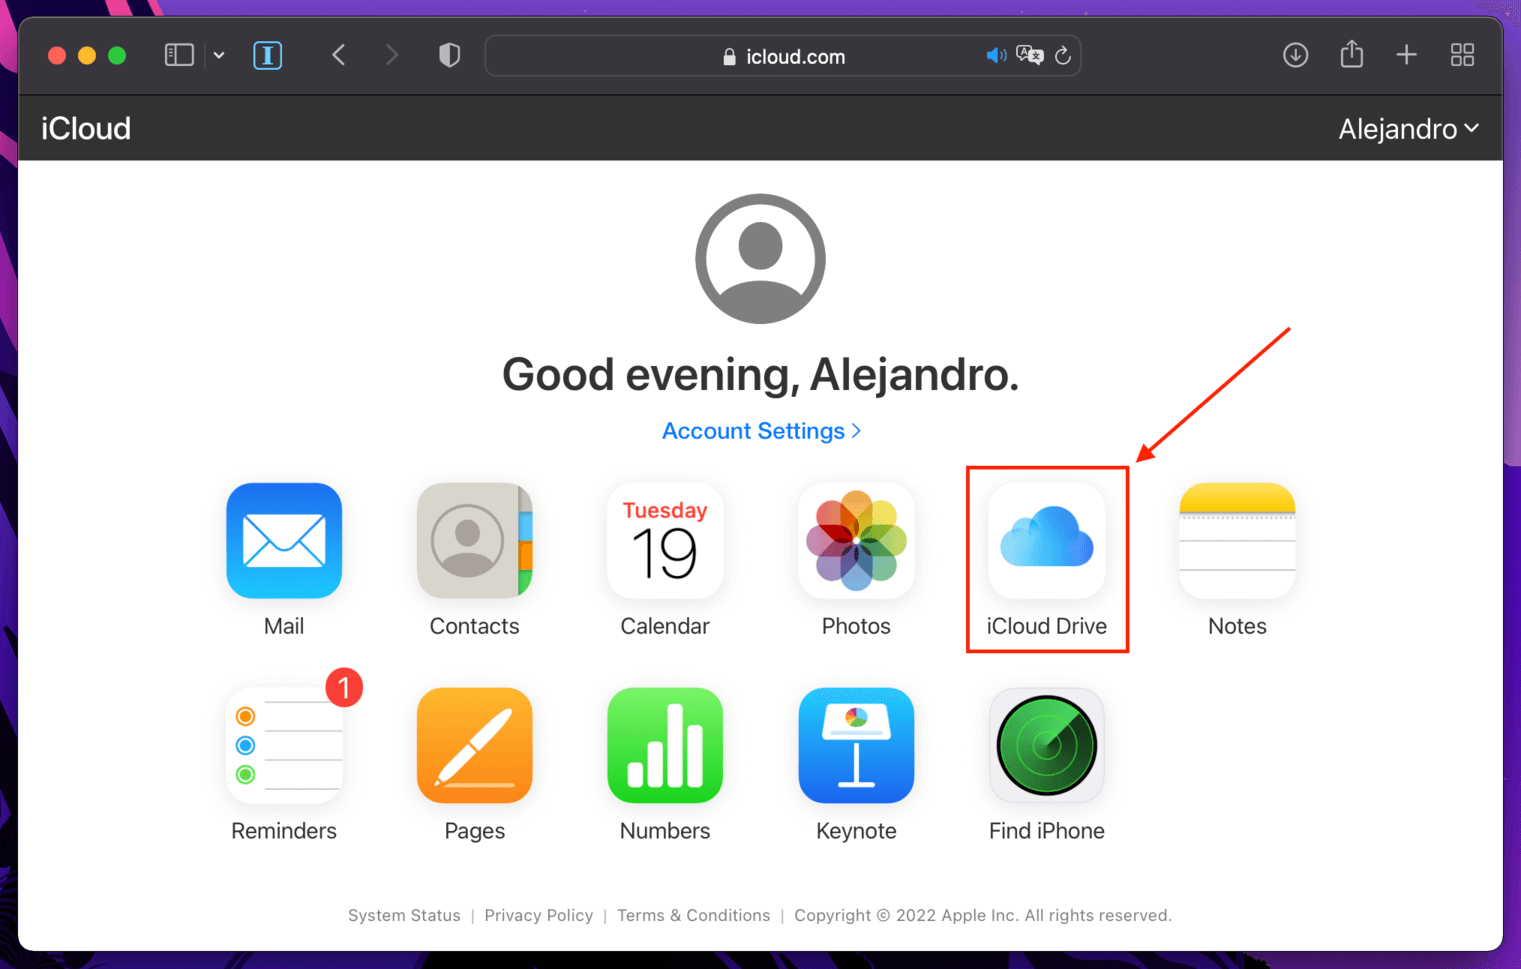 iCloud Drive app in the iCloud website